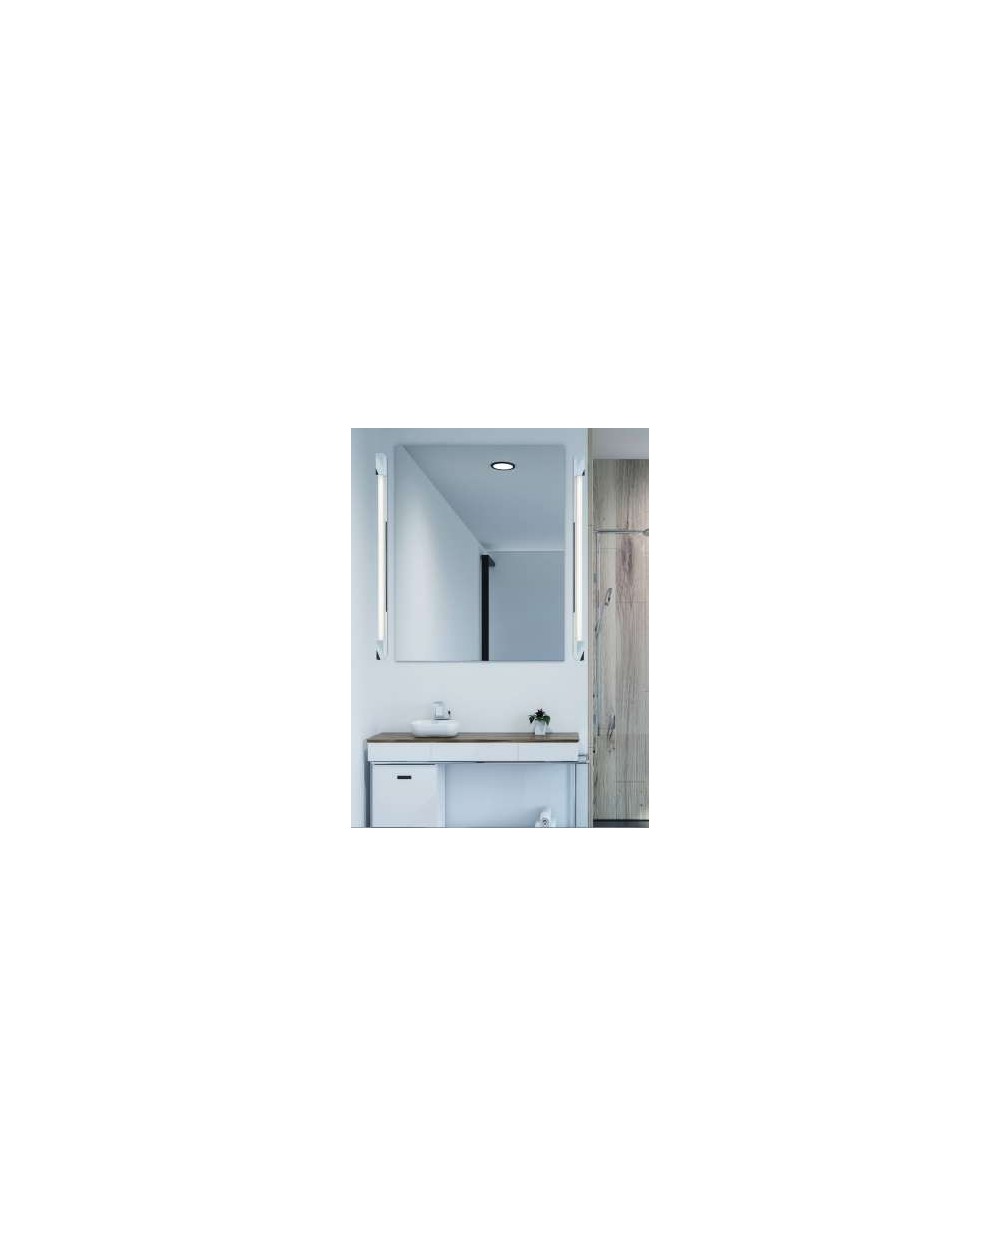 Lampa ścienna / kinkiet Primo 620 IP44 - Orlicki Design minimalistyczna oprawa listwa do łazienki